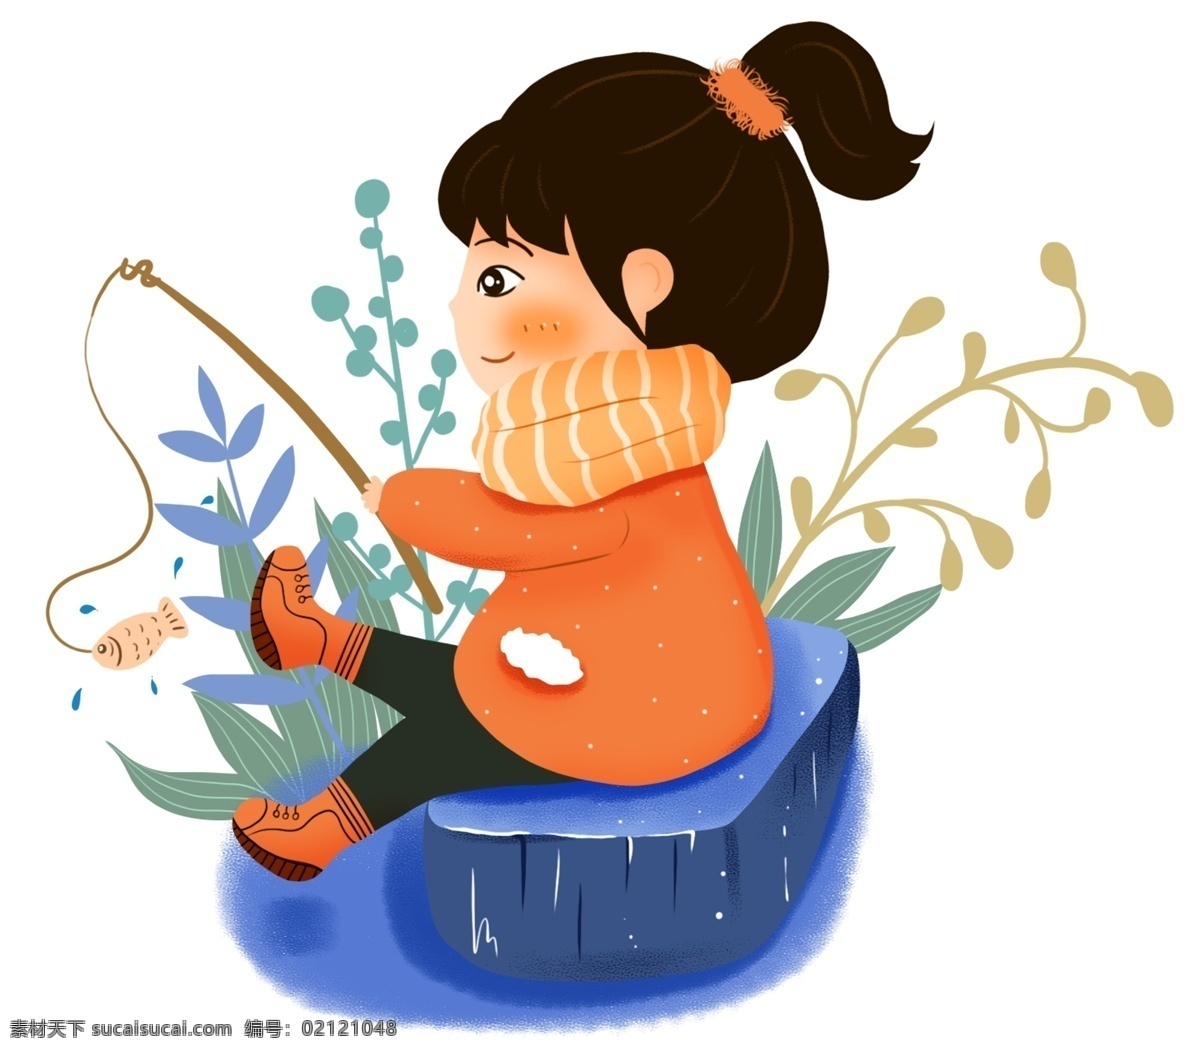 手绘 钓鱼 小女孩 插画 植物 冬天 围巾 大寒插画 手绘女孩插图 石头座椅 橙色衣服